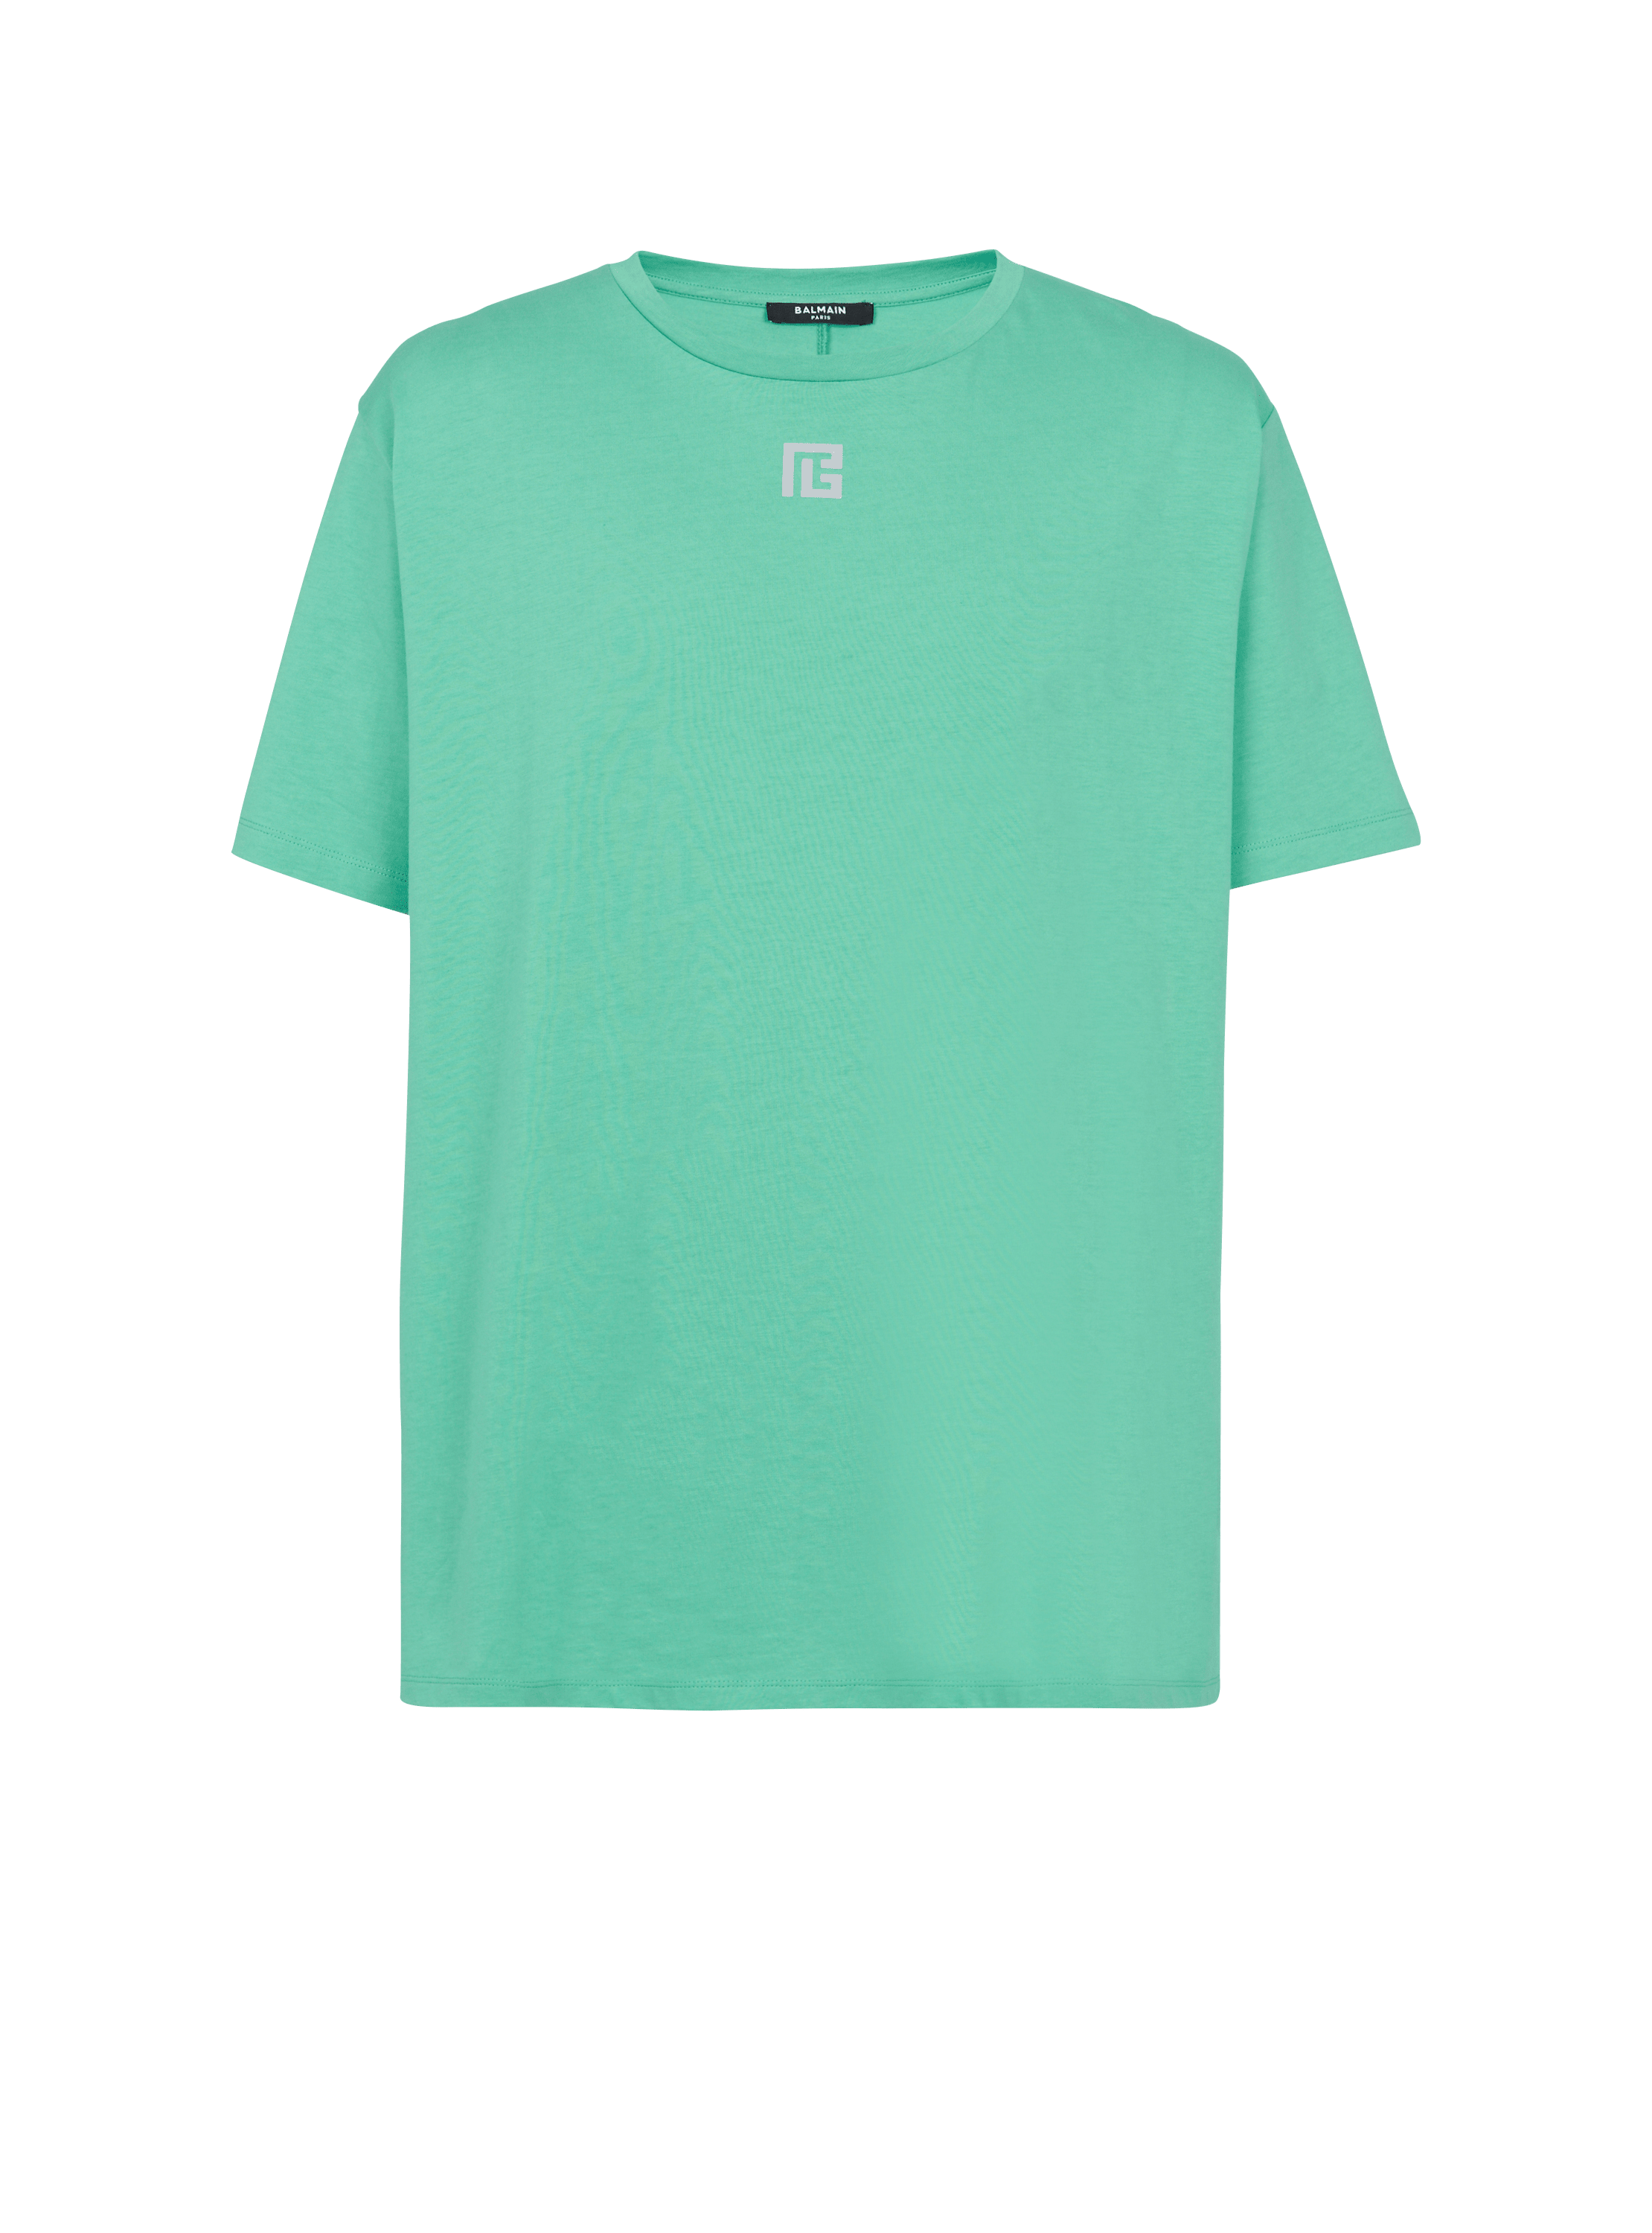 T-shirt oversize en coton éco-responsable imprimé maxi logo Balmain réflechissant